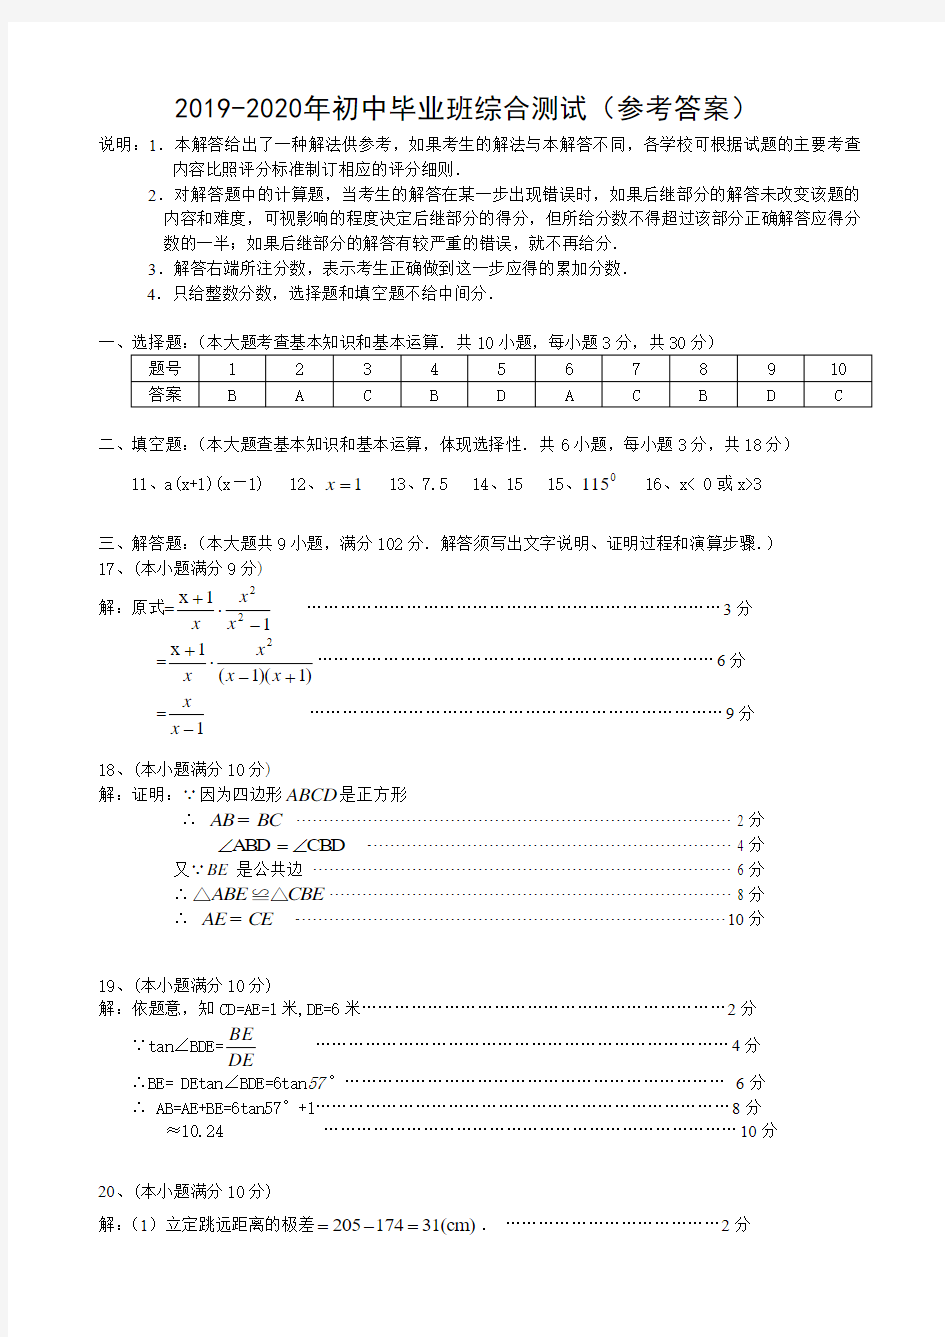 2019-2020年初中毕业班综合测试(参考答案)